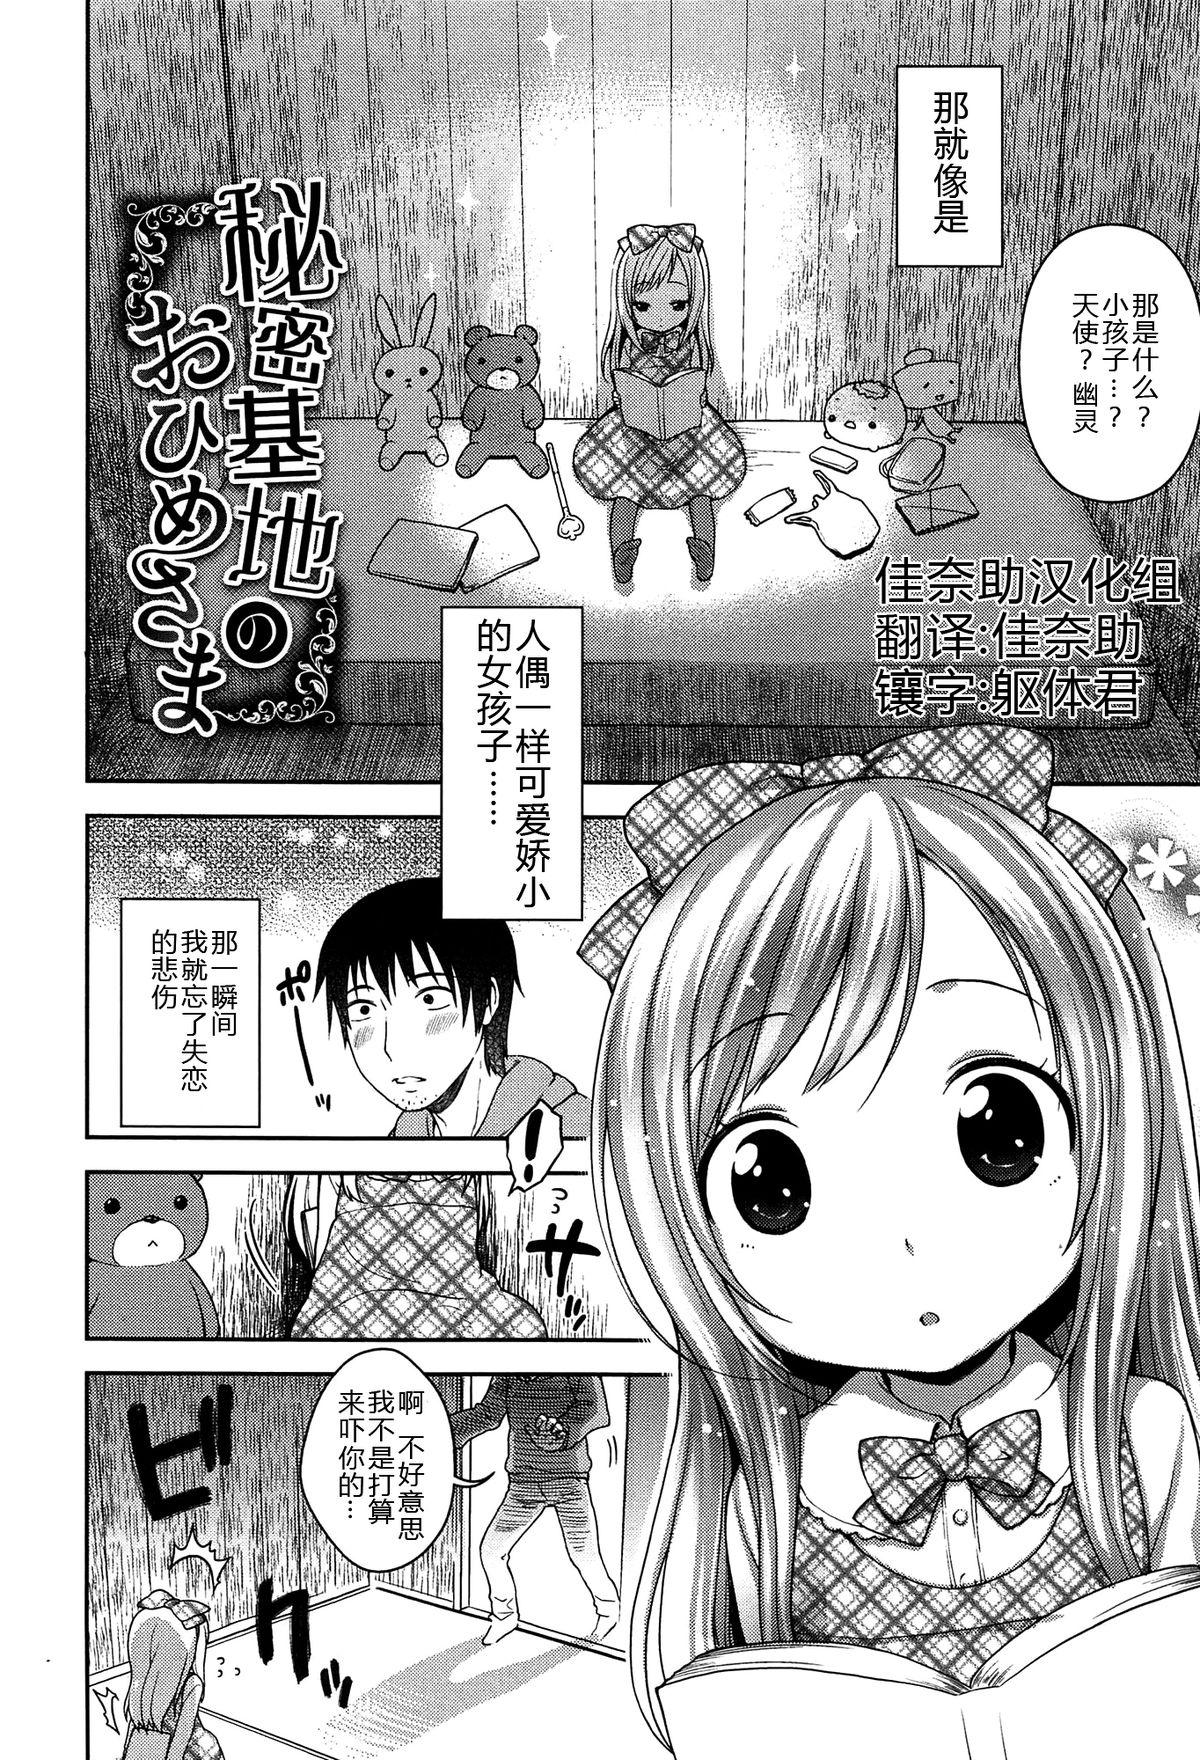 Zorra Himitsu Kichi no Ohime-sama Nerd - Page 2